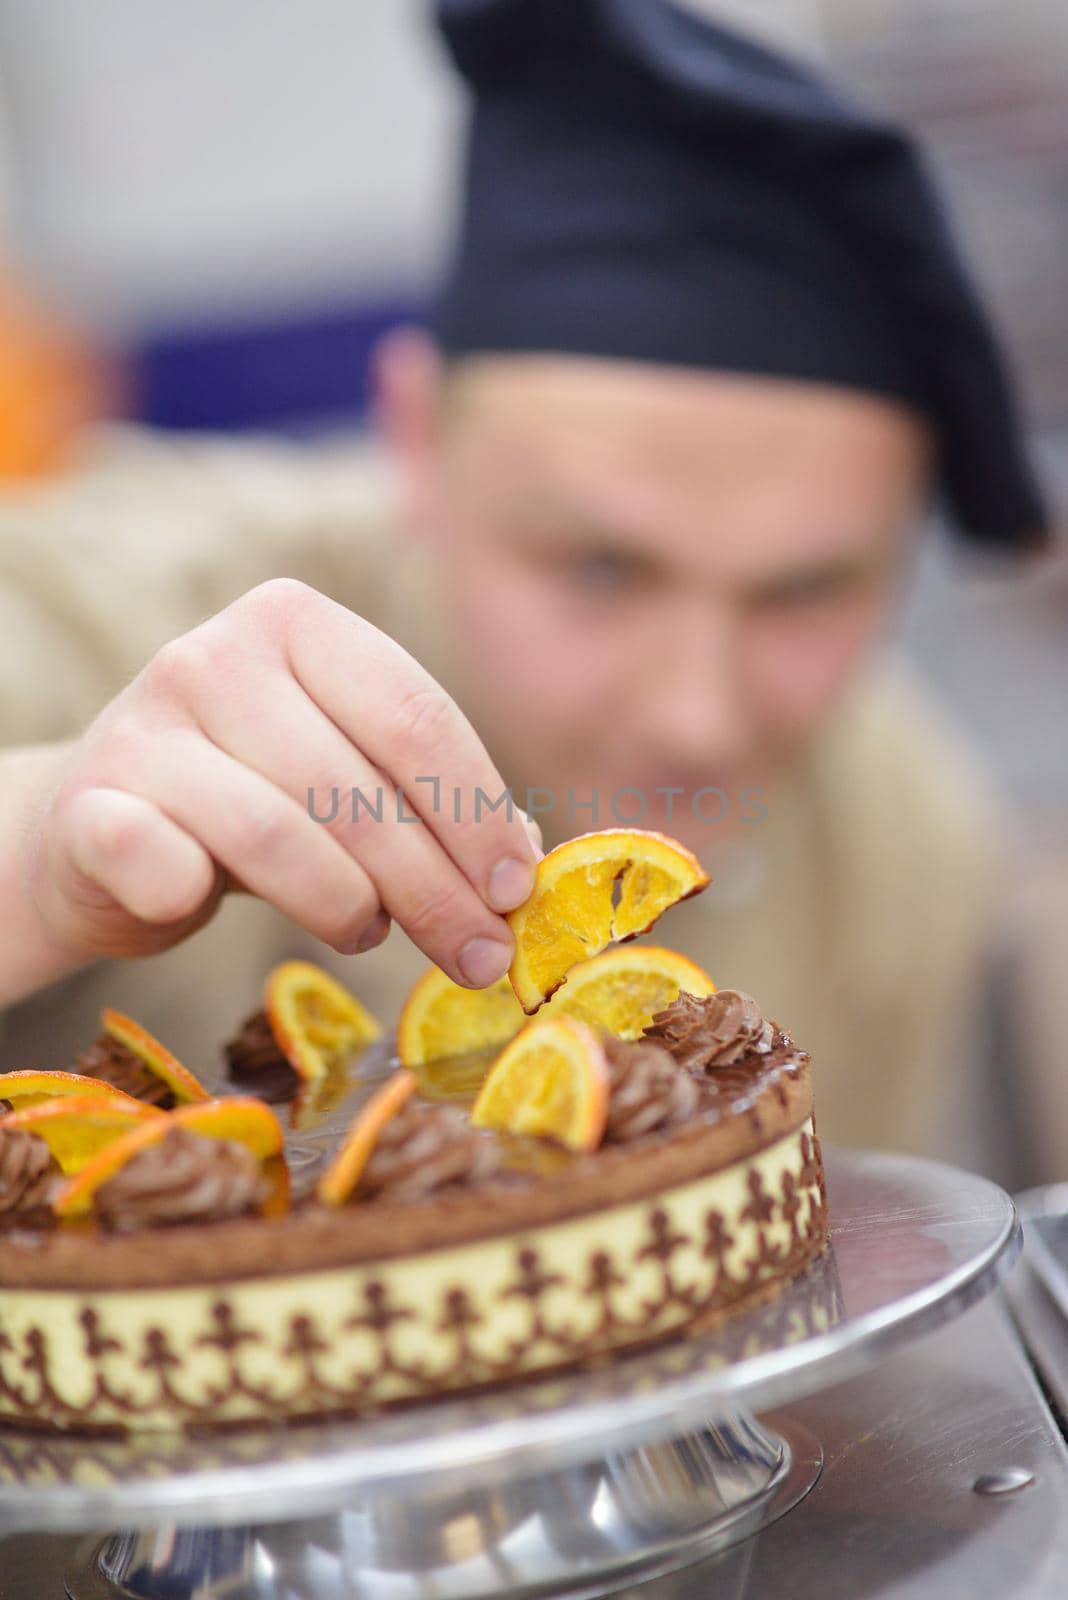 chef preparing desert cake in the kitchen by dotshock